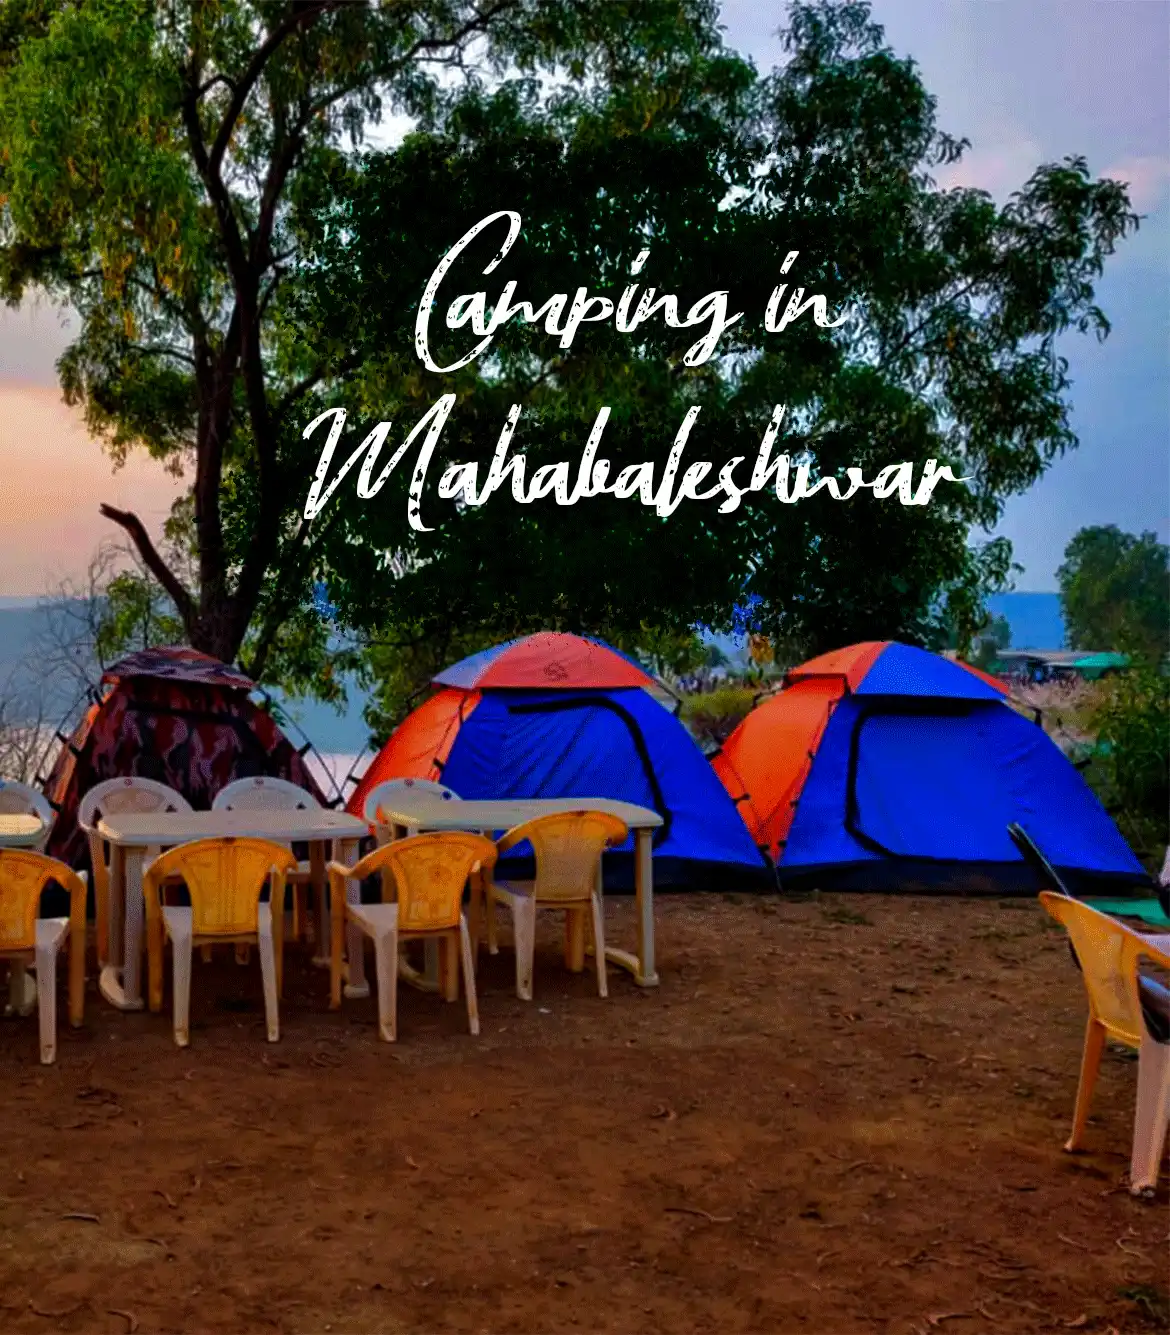 Camping near Mahabaleshwar